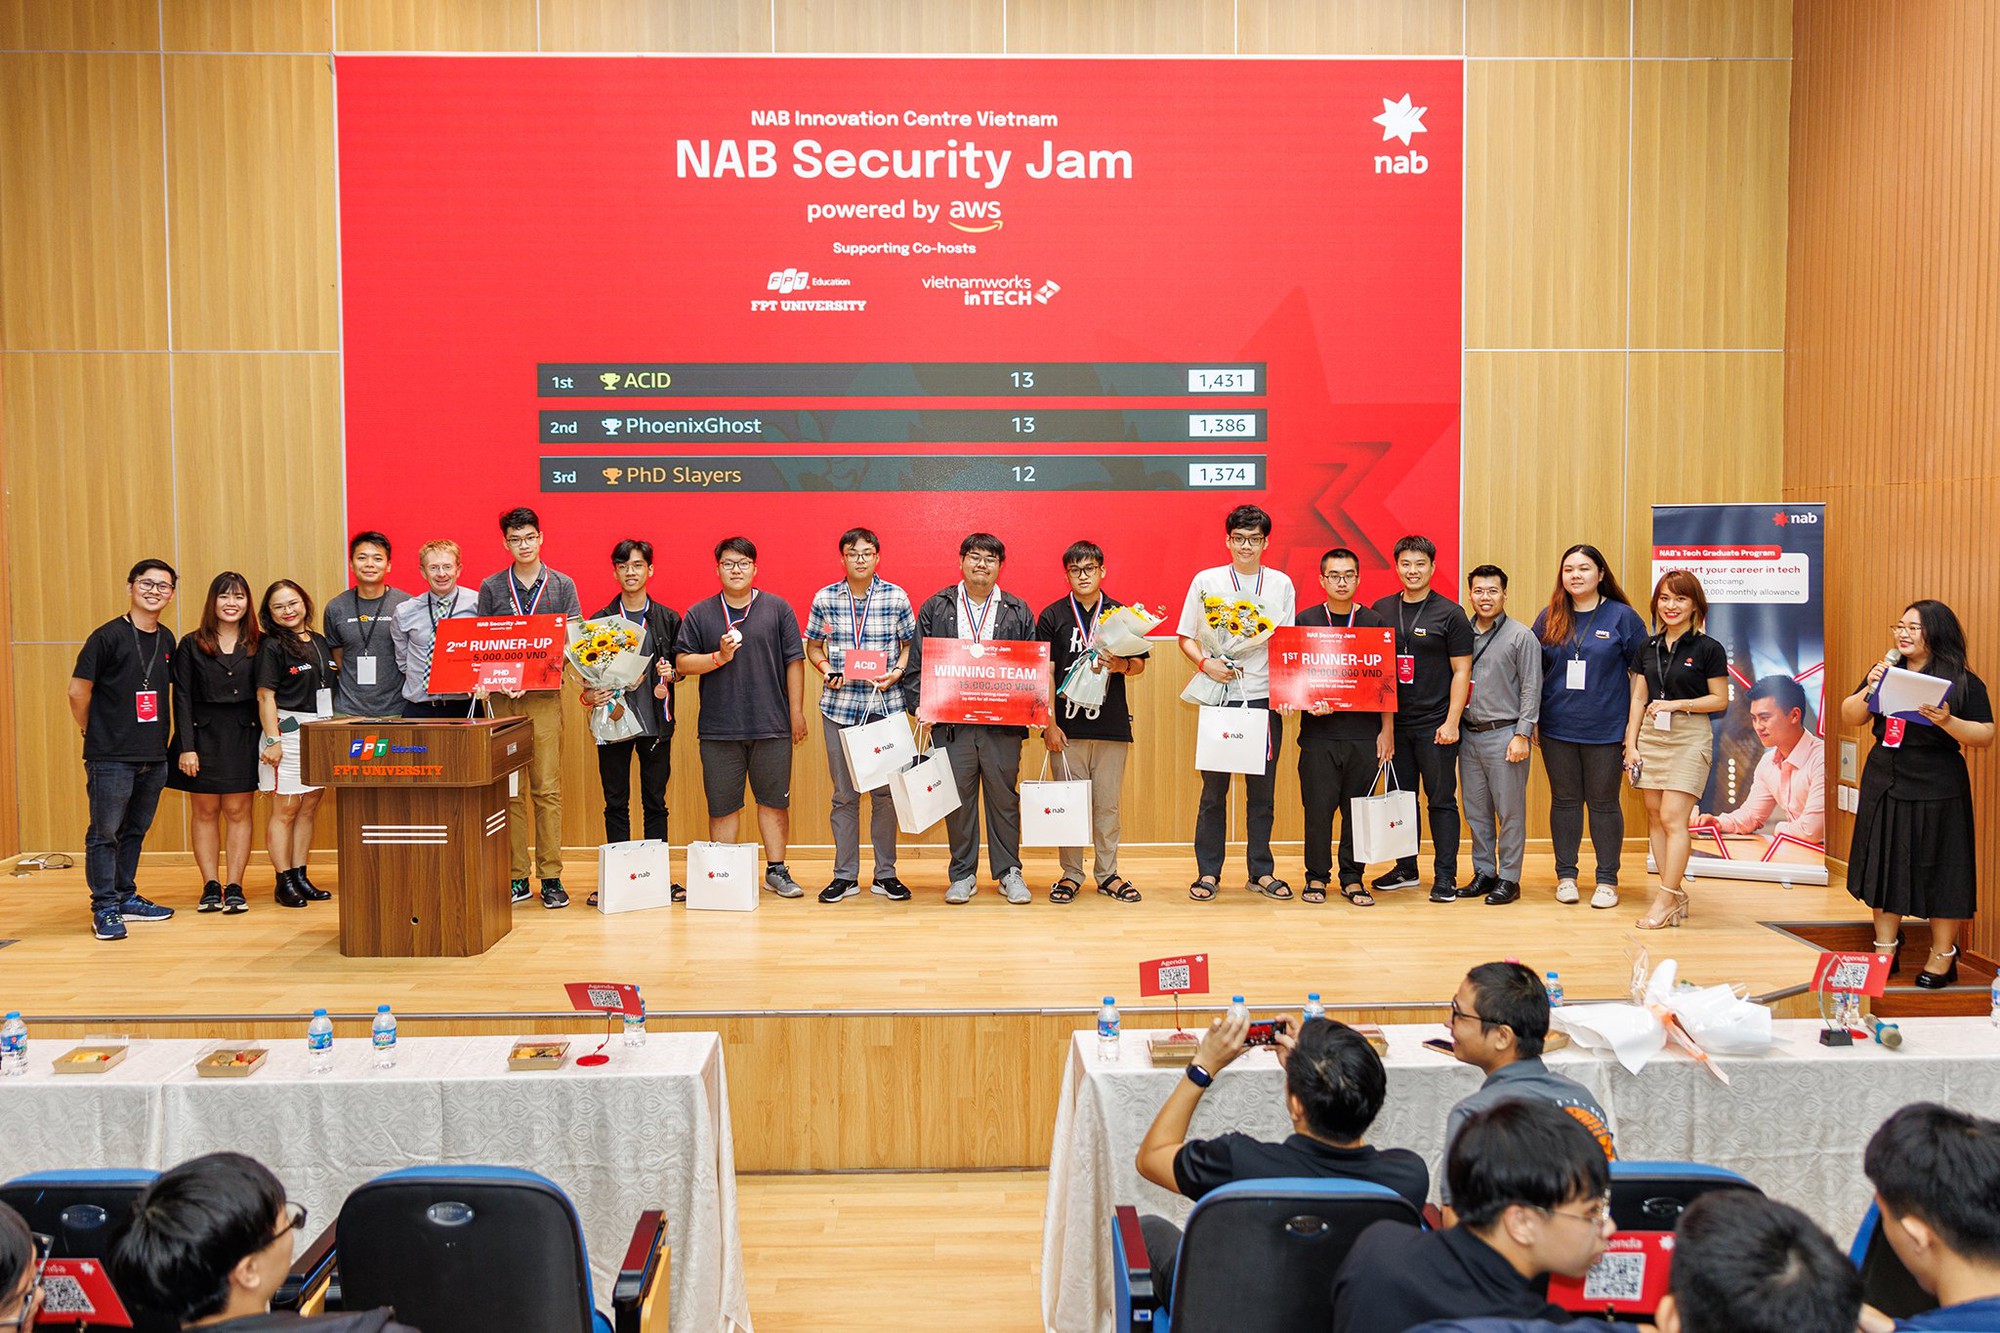 Security Jam: Sân chơi dành cho giới trẻ yêu công nghệ được tổ chức bởi NAB Innovation Centre Vietnam trên nền tảng AWS Cloud - Ảnh 4.